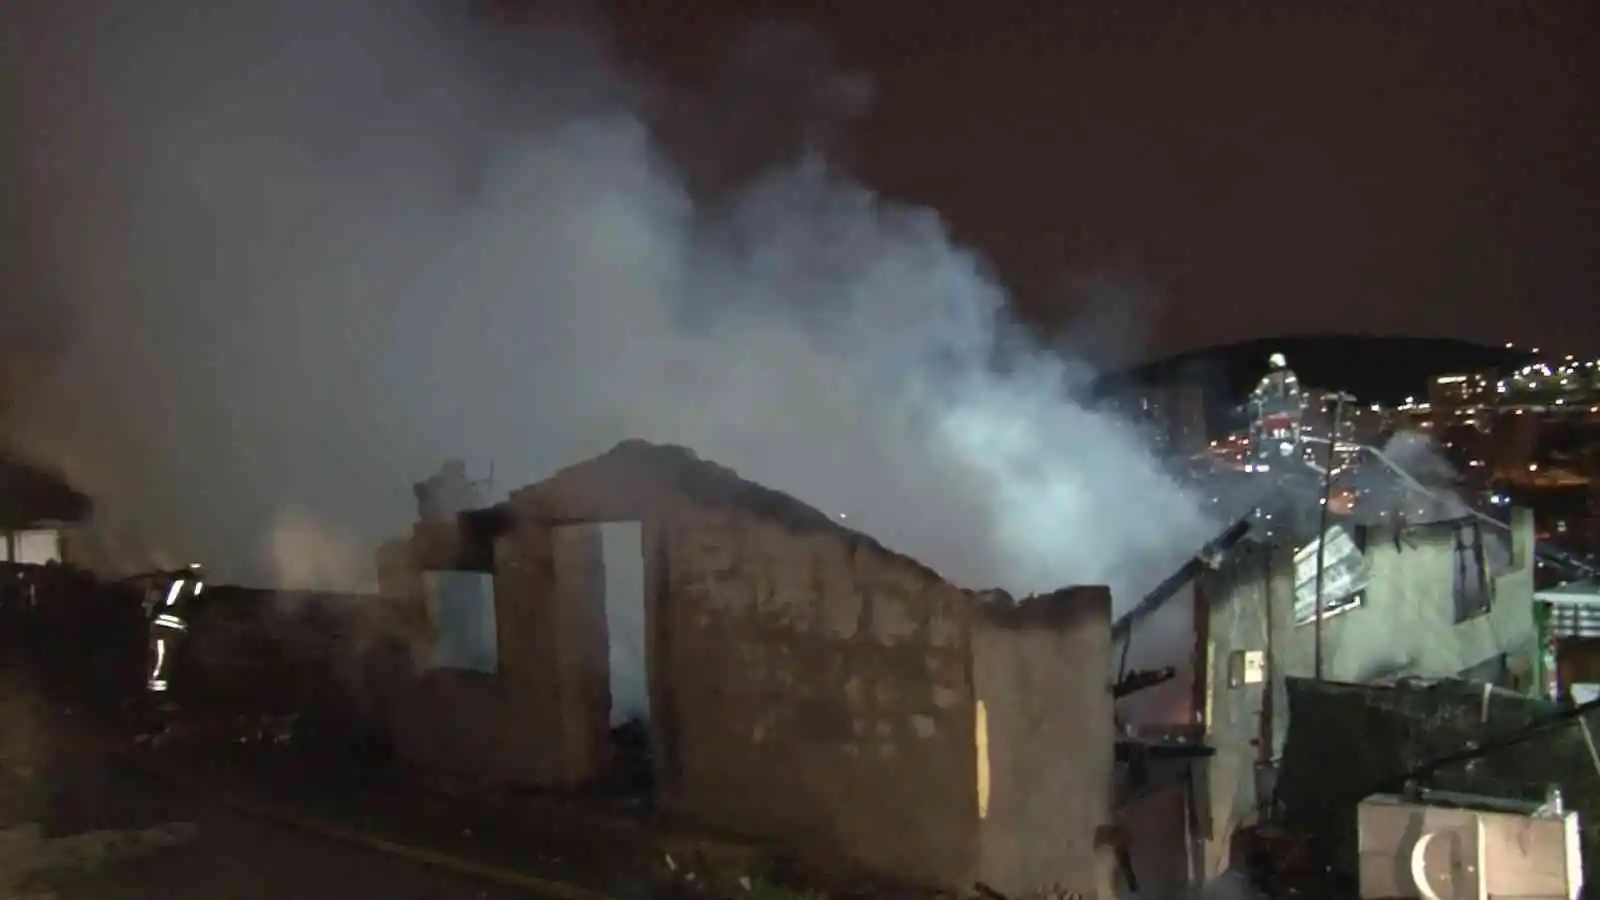 Maltepe’de gecekondu yangını: Alevler geceyi aydınlattı
